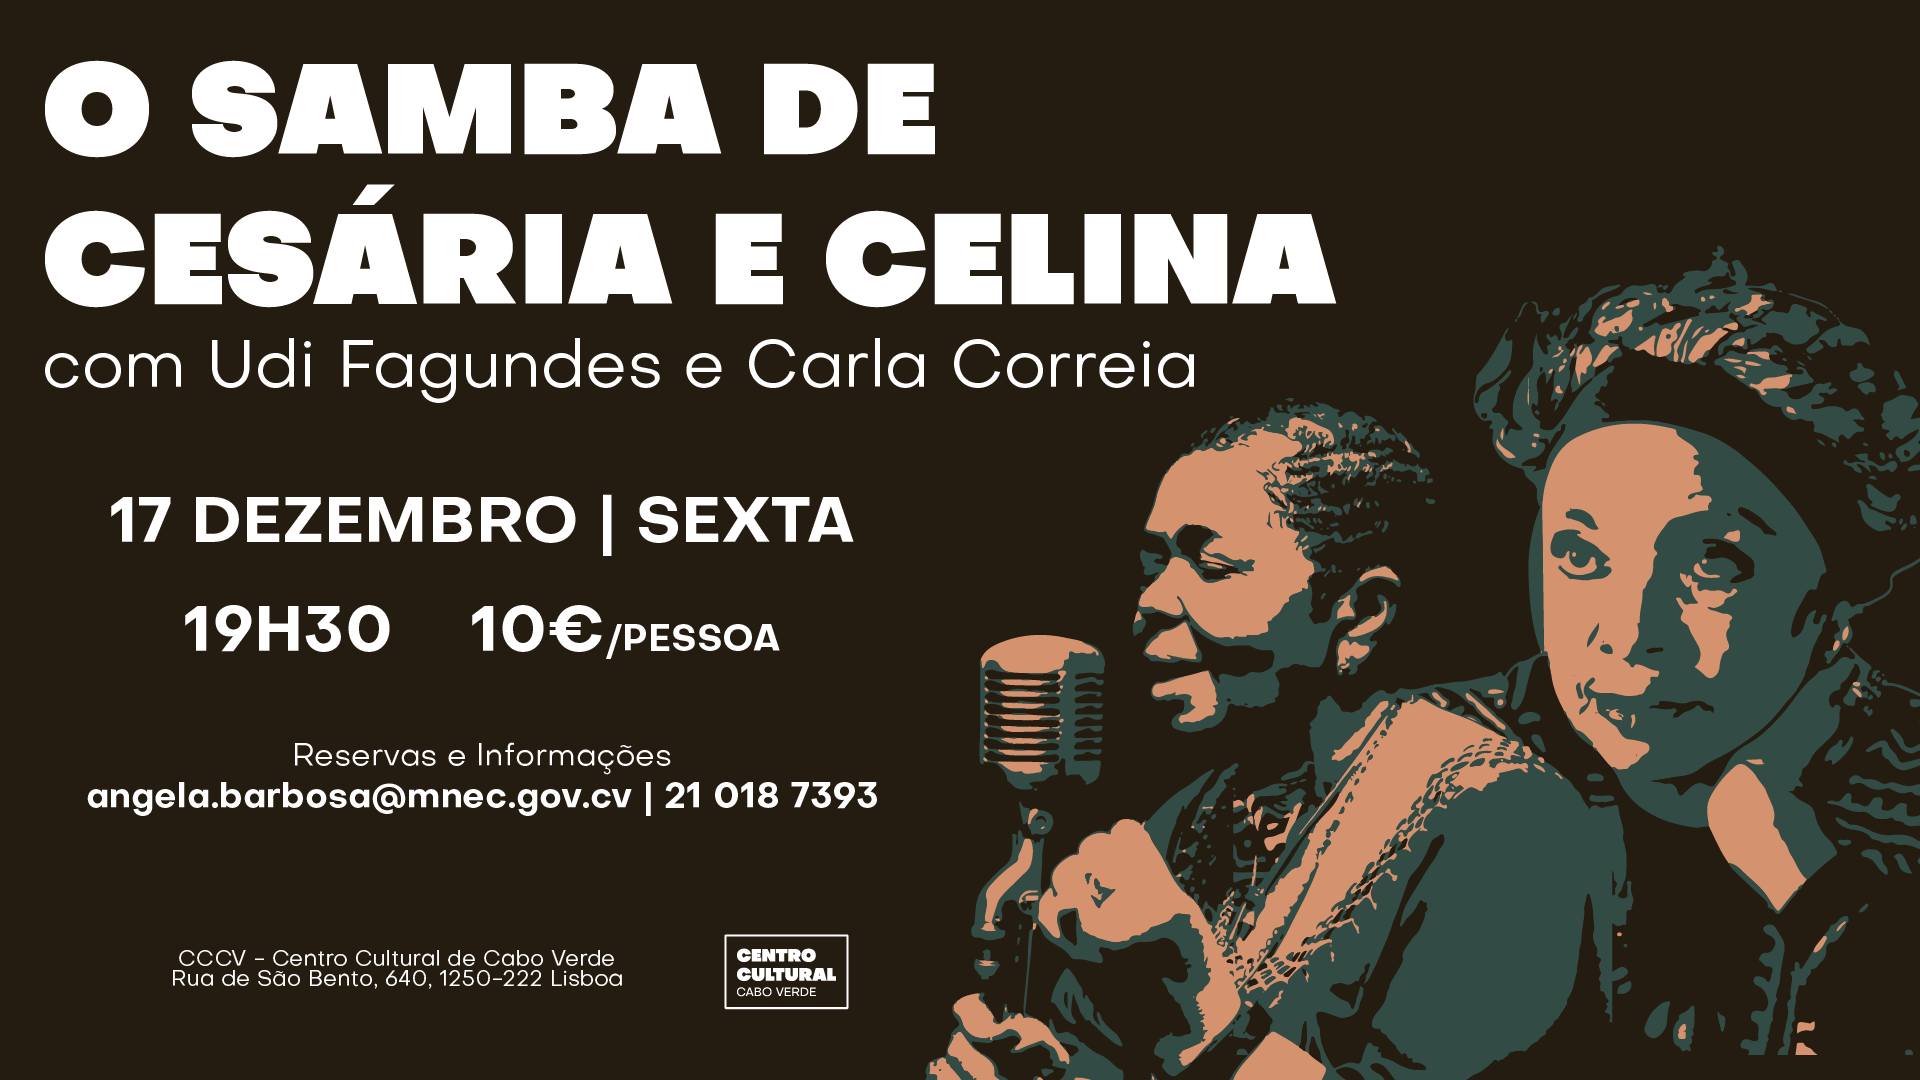 «O Samba de Cesária e Celina», com Udi Fagundes e Carla Correia